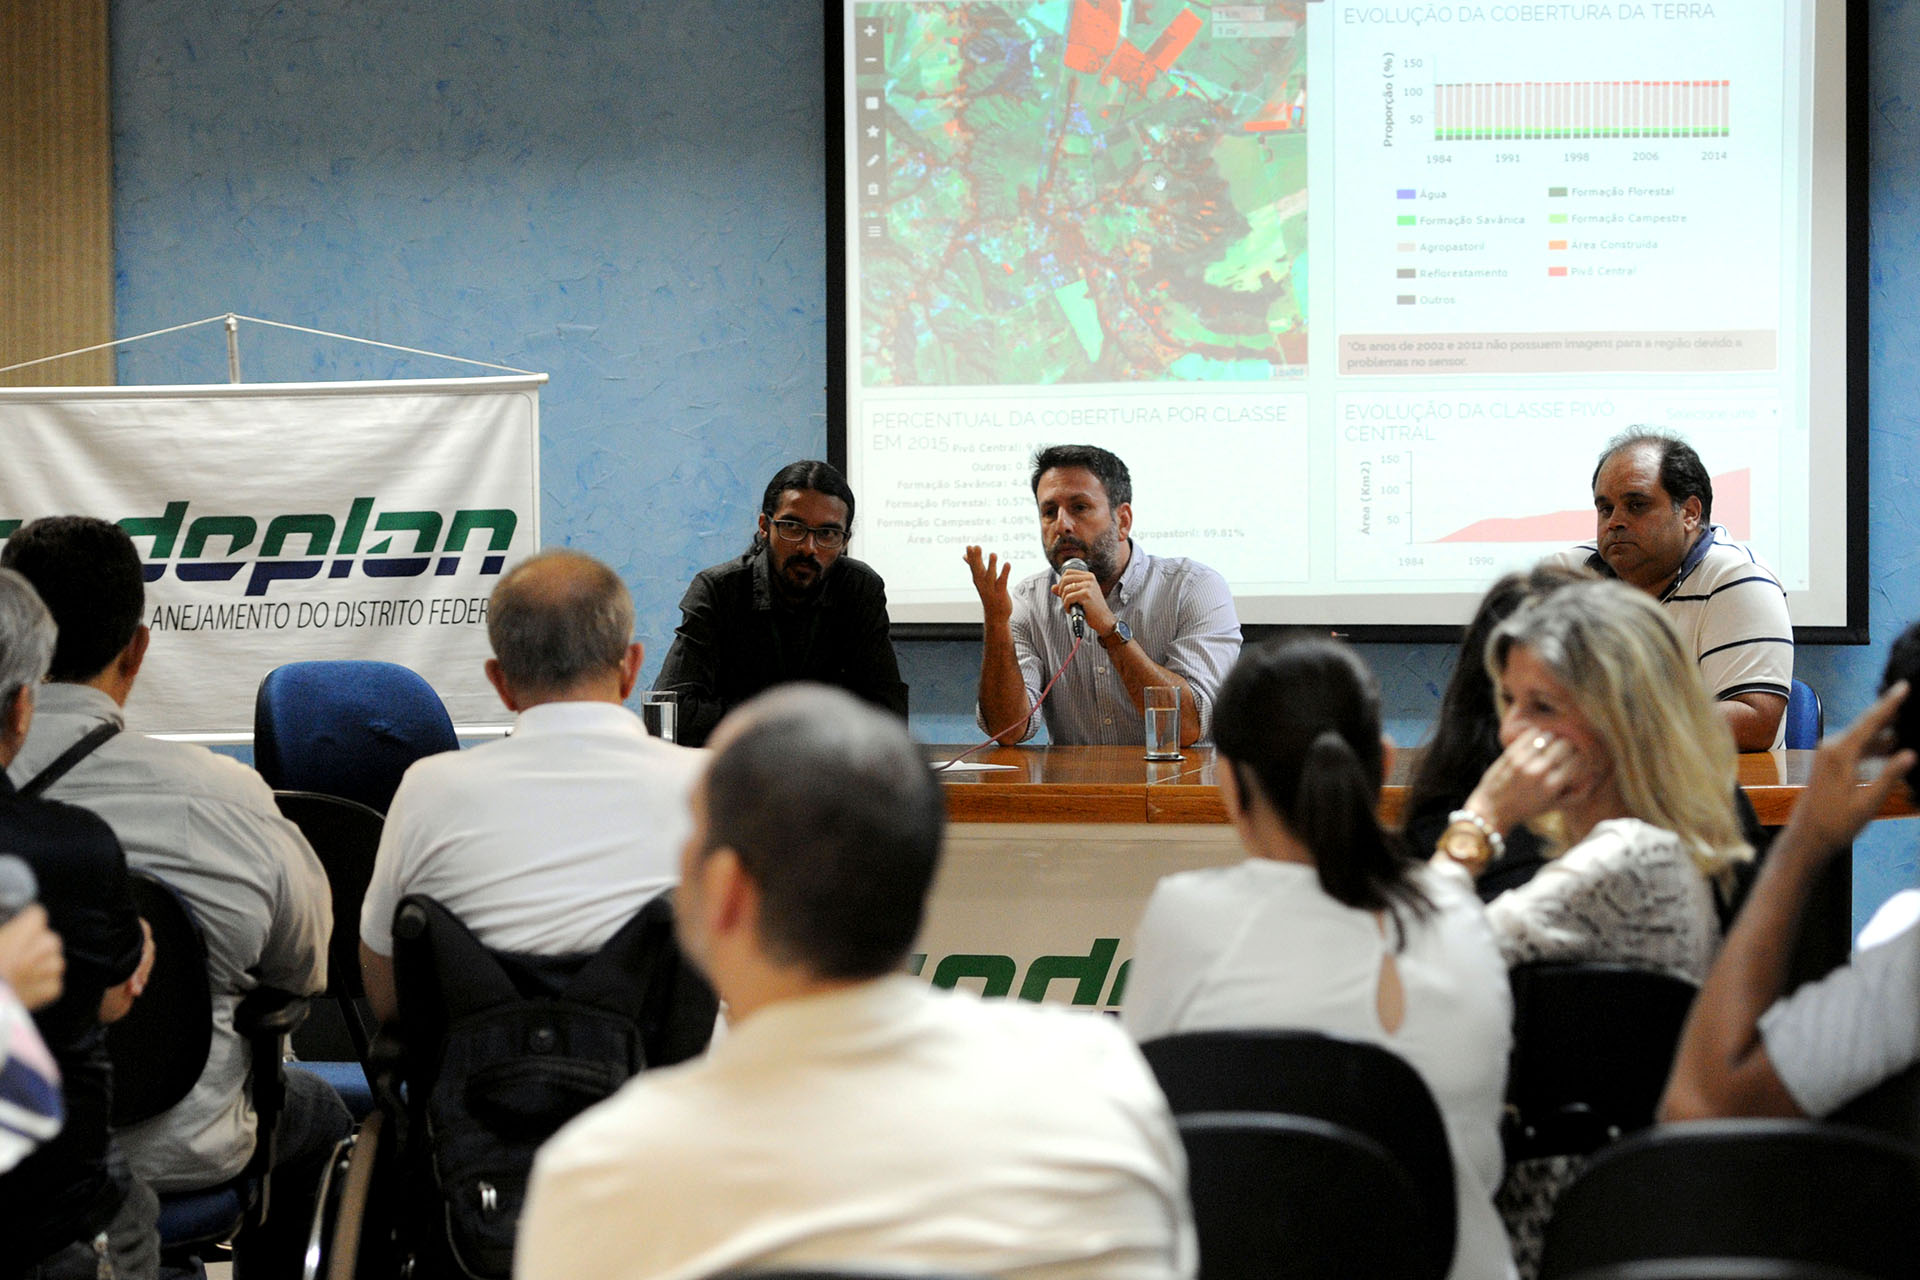 Apresentação do Brasília em Mapas ocorreu na sede da Codeplan, nesta quinta-feira (18).